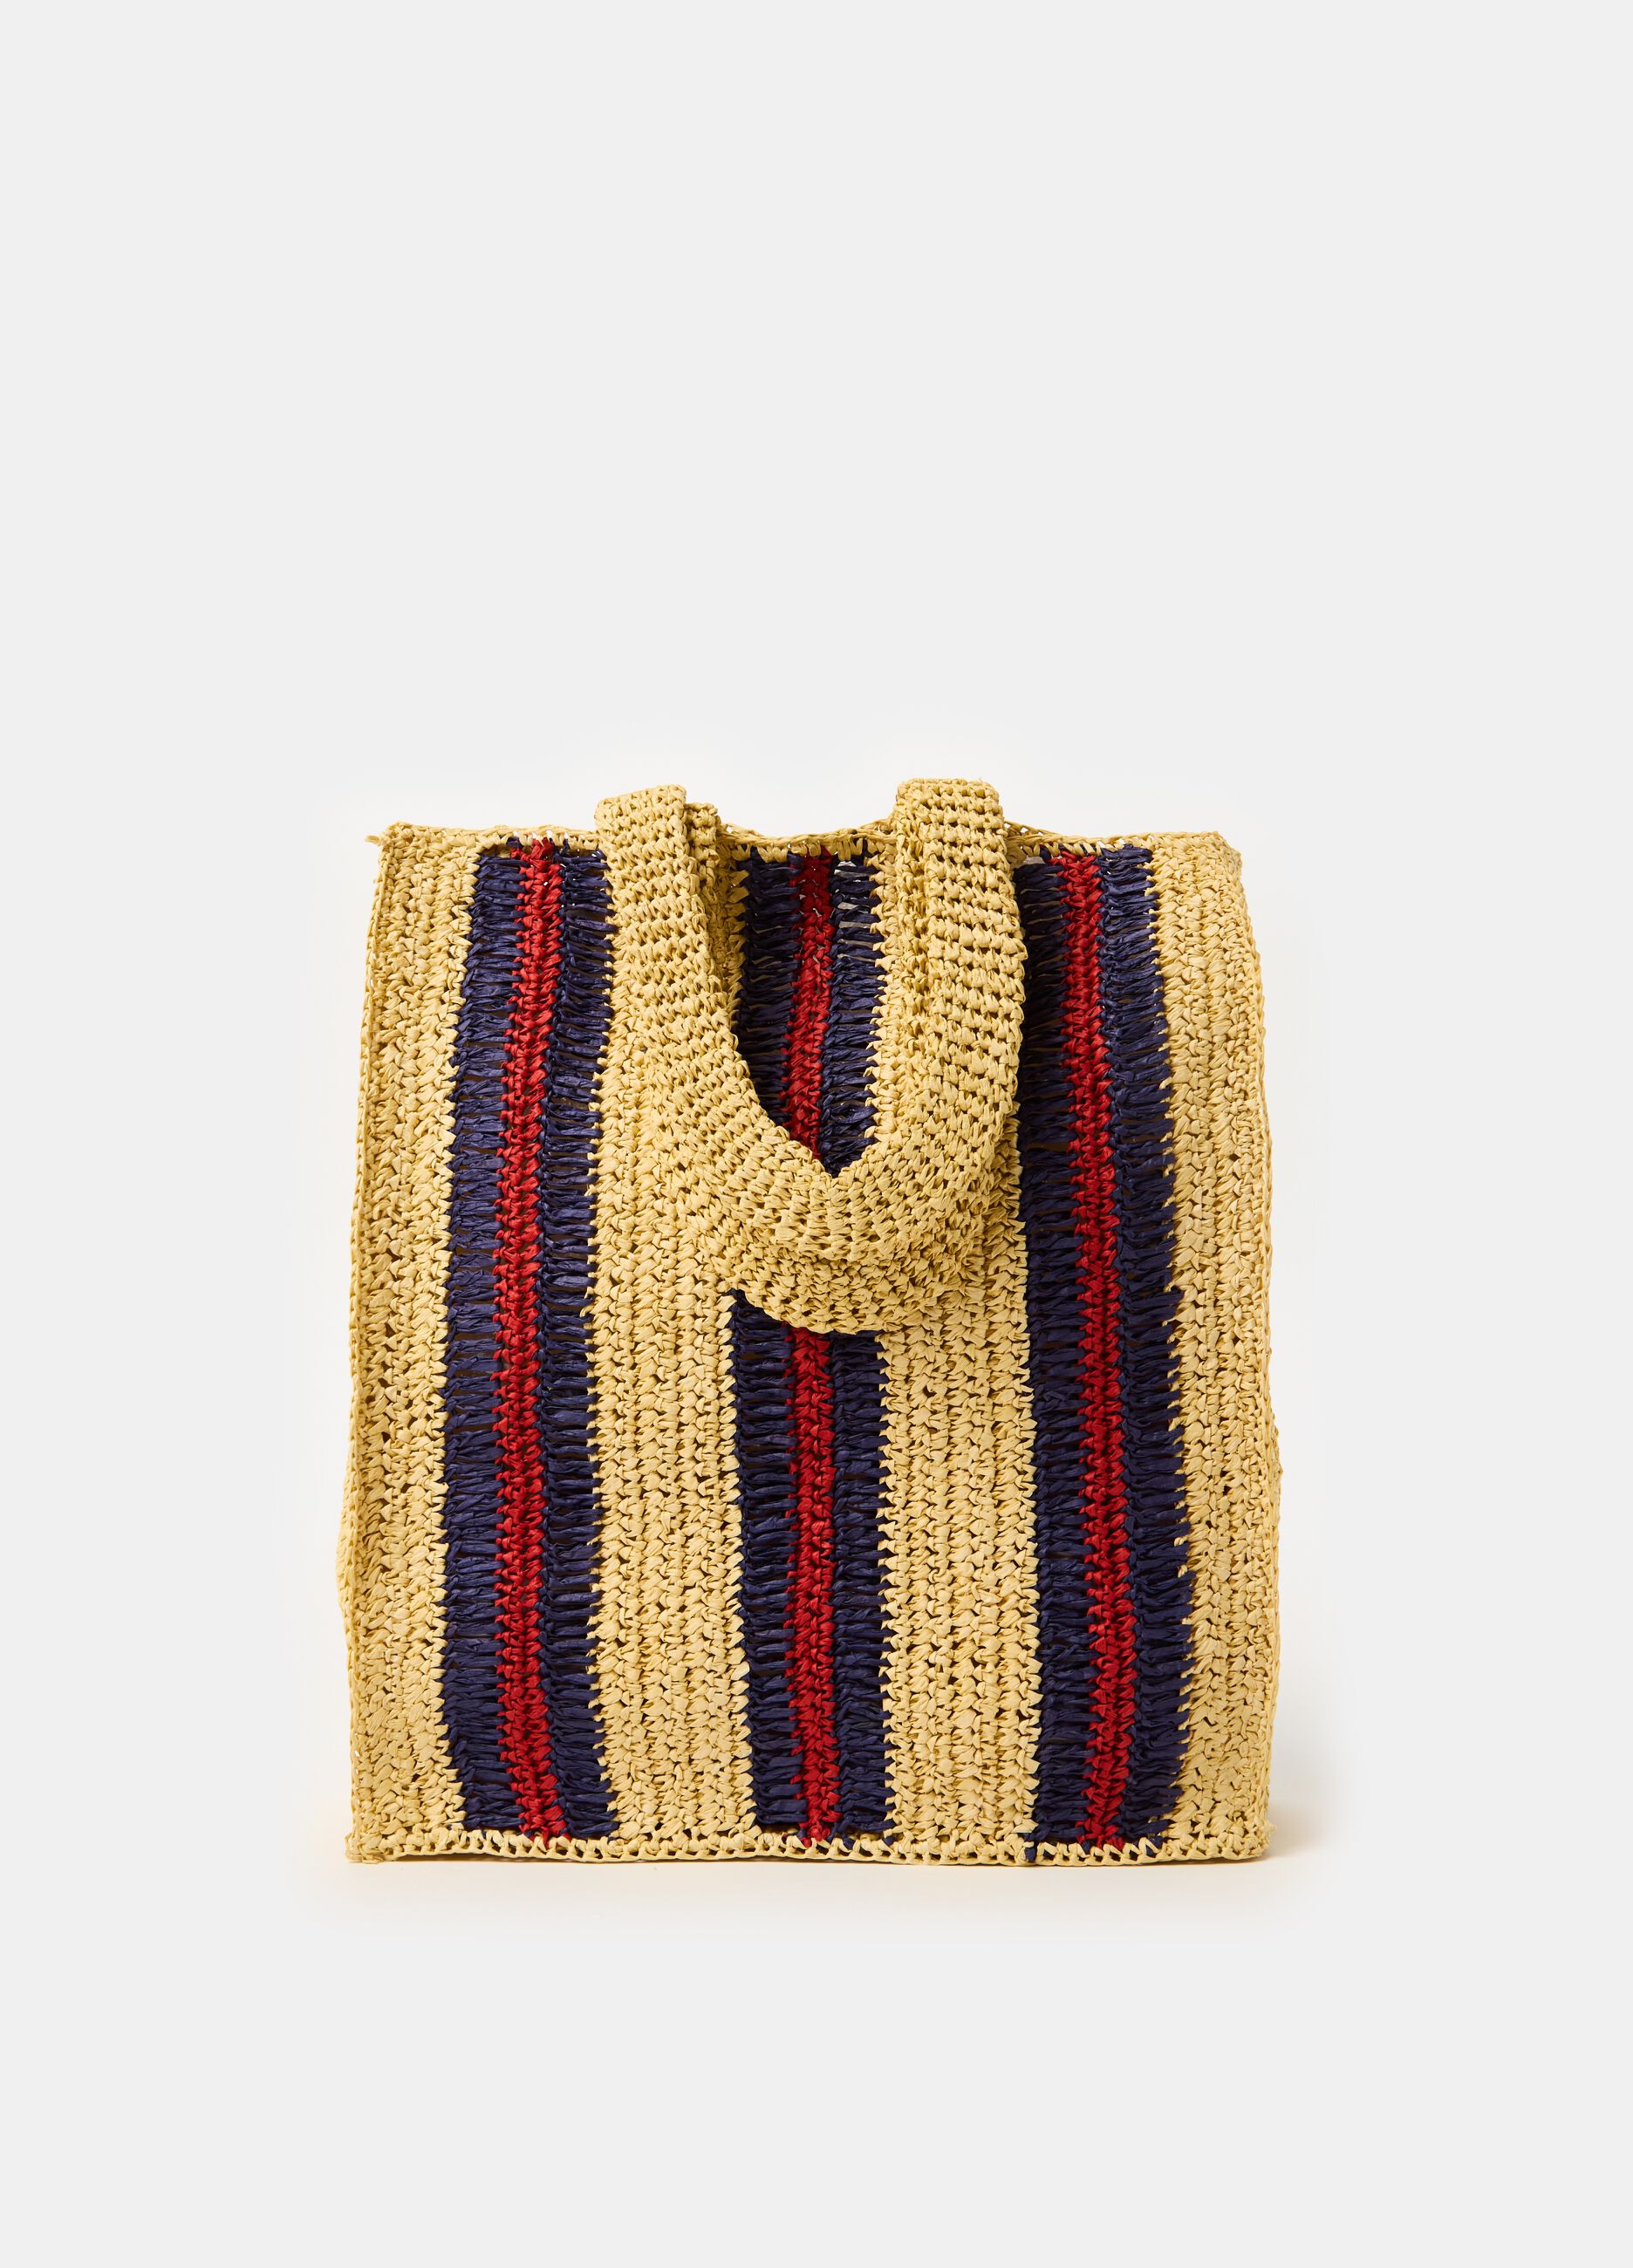 Tote bag in striped raffia